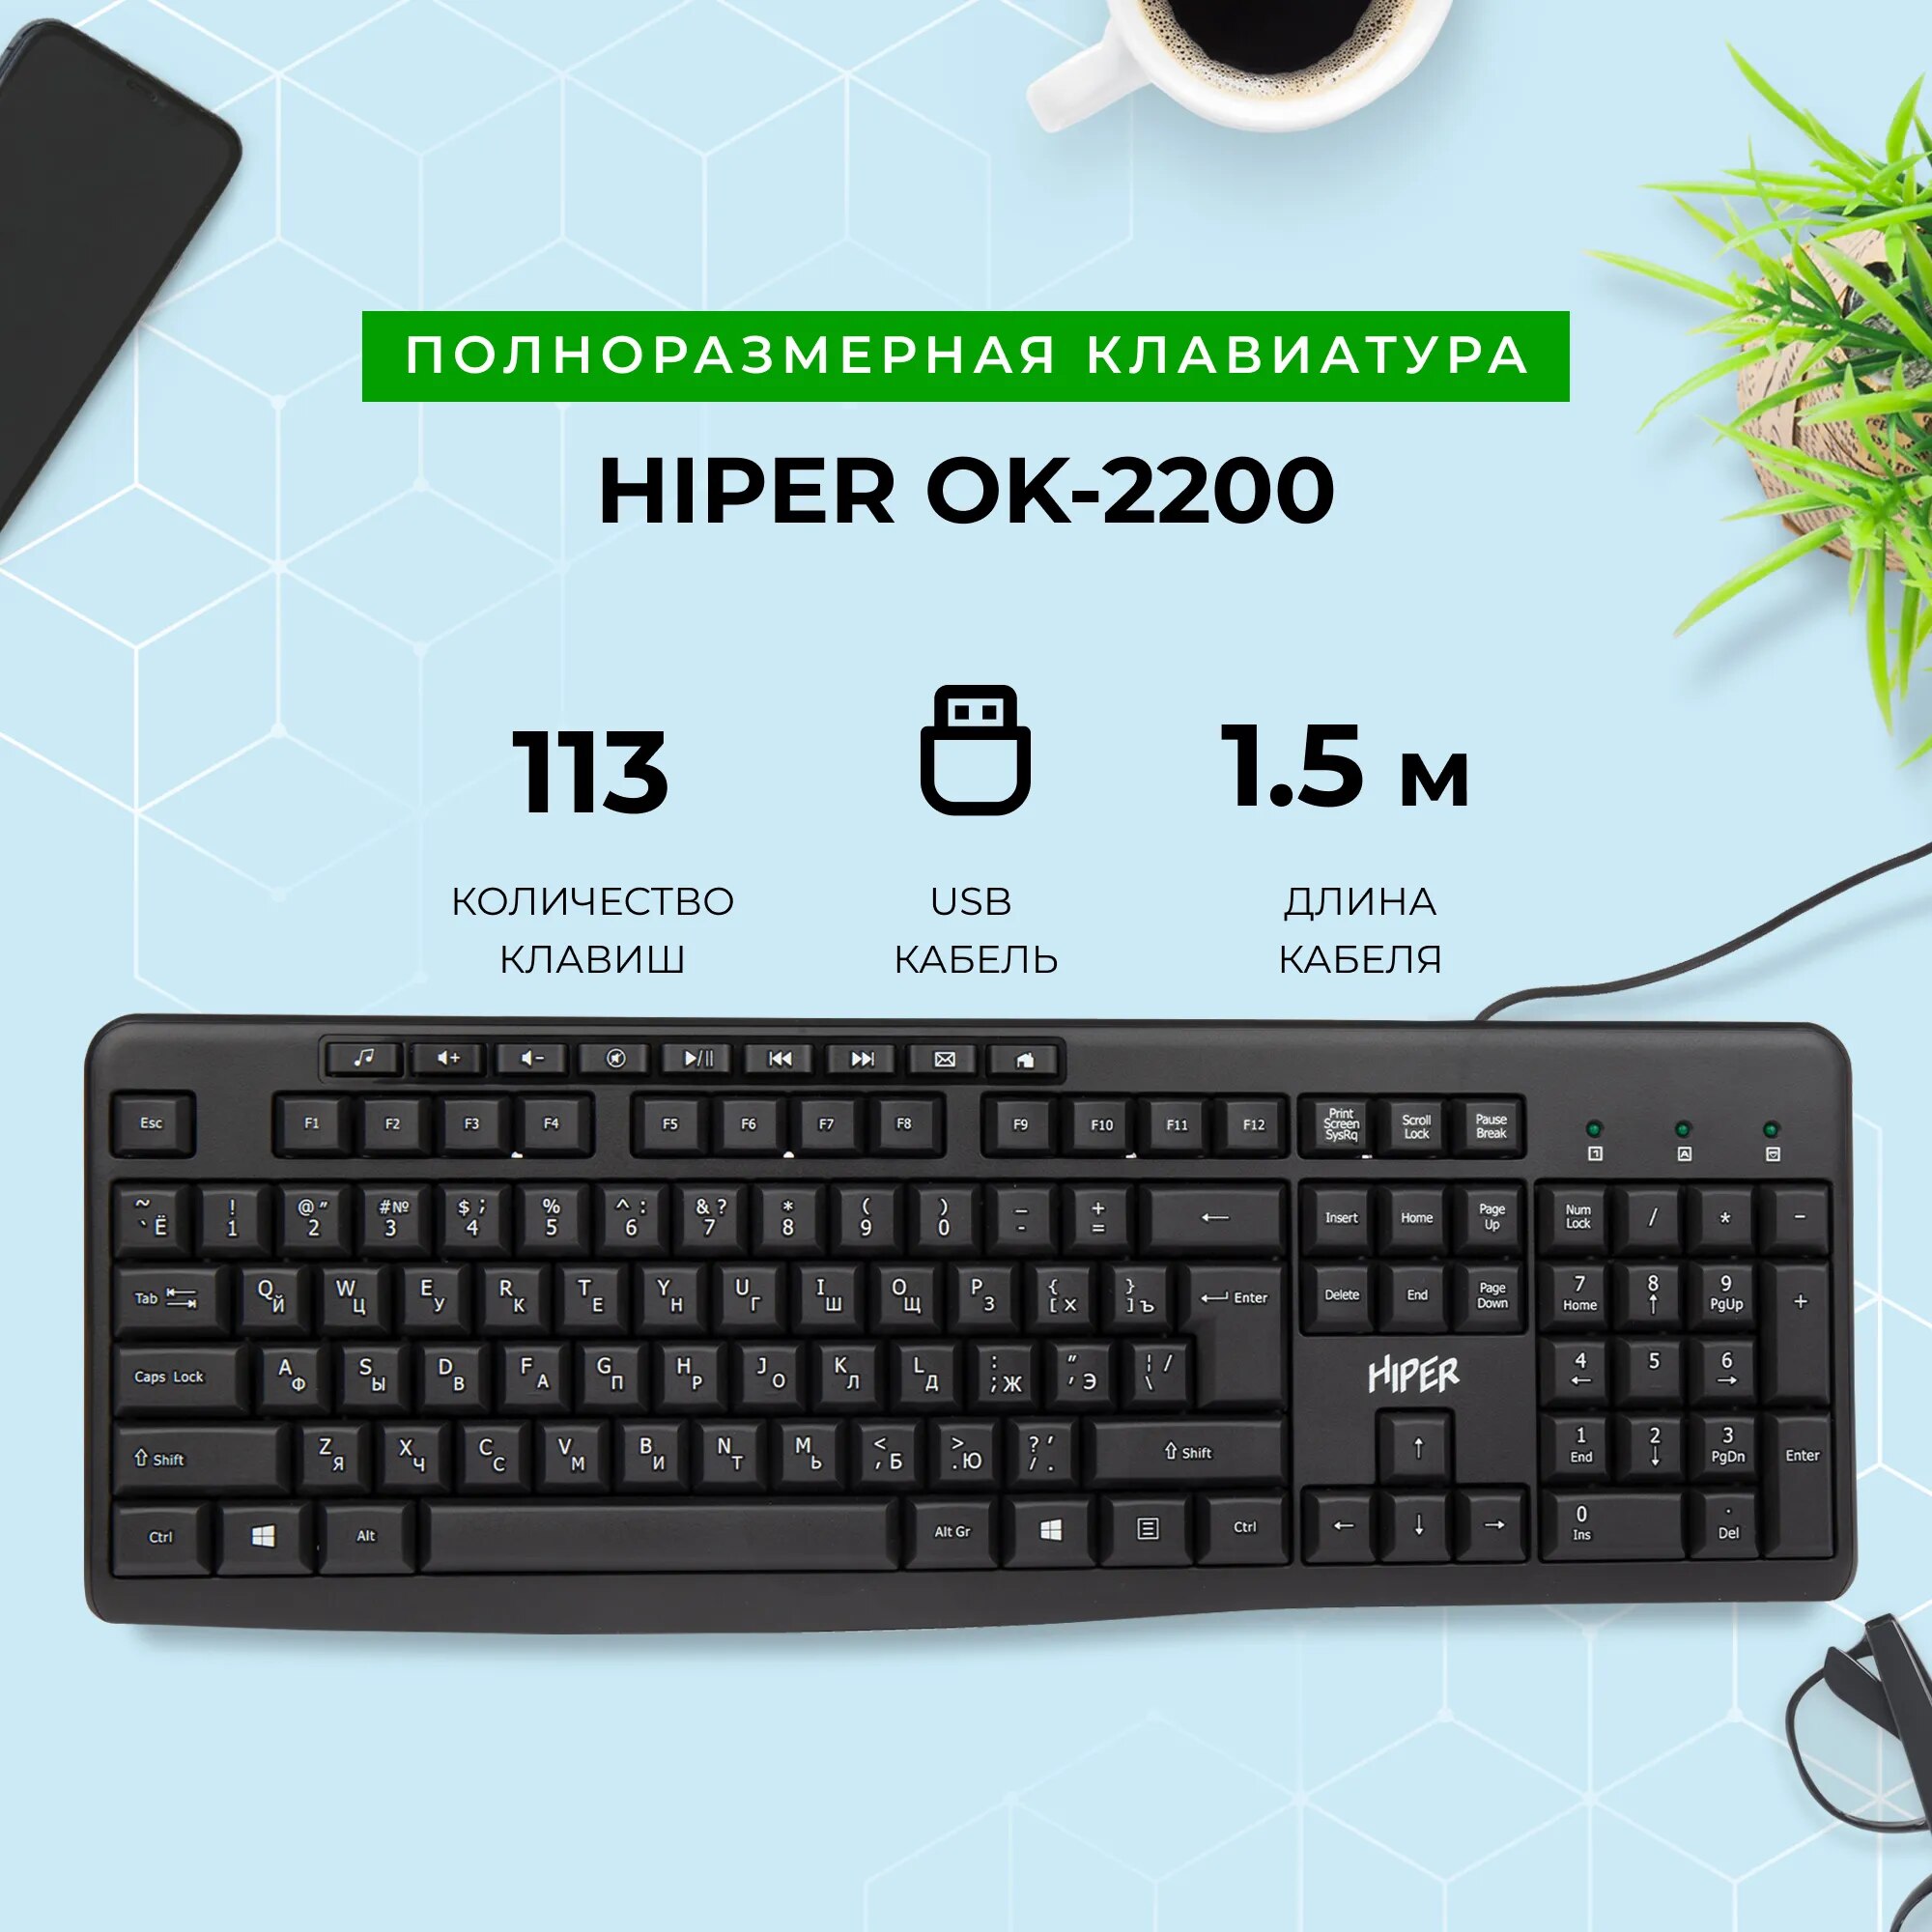 Проводная клавиатура HIPER OK-2200 Black